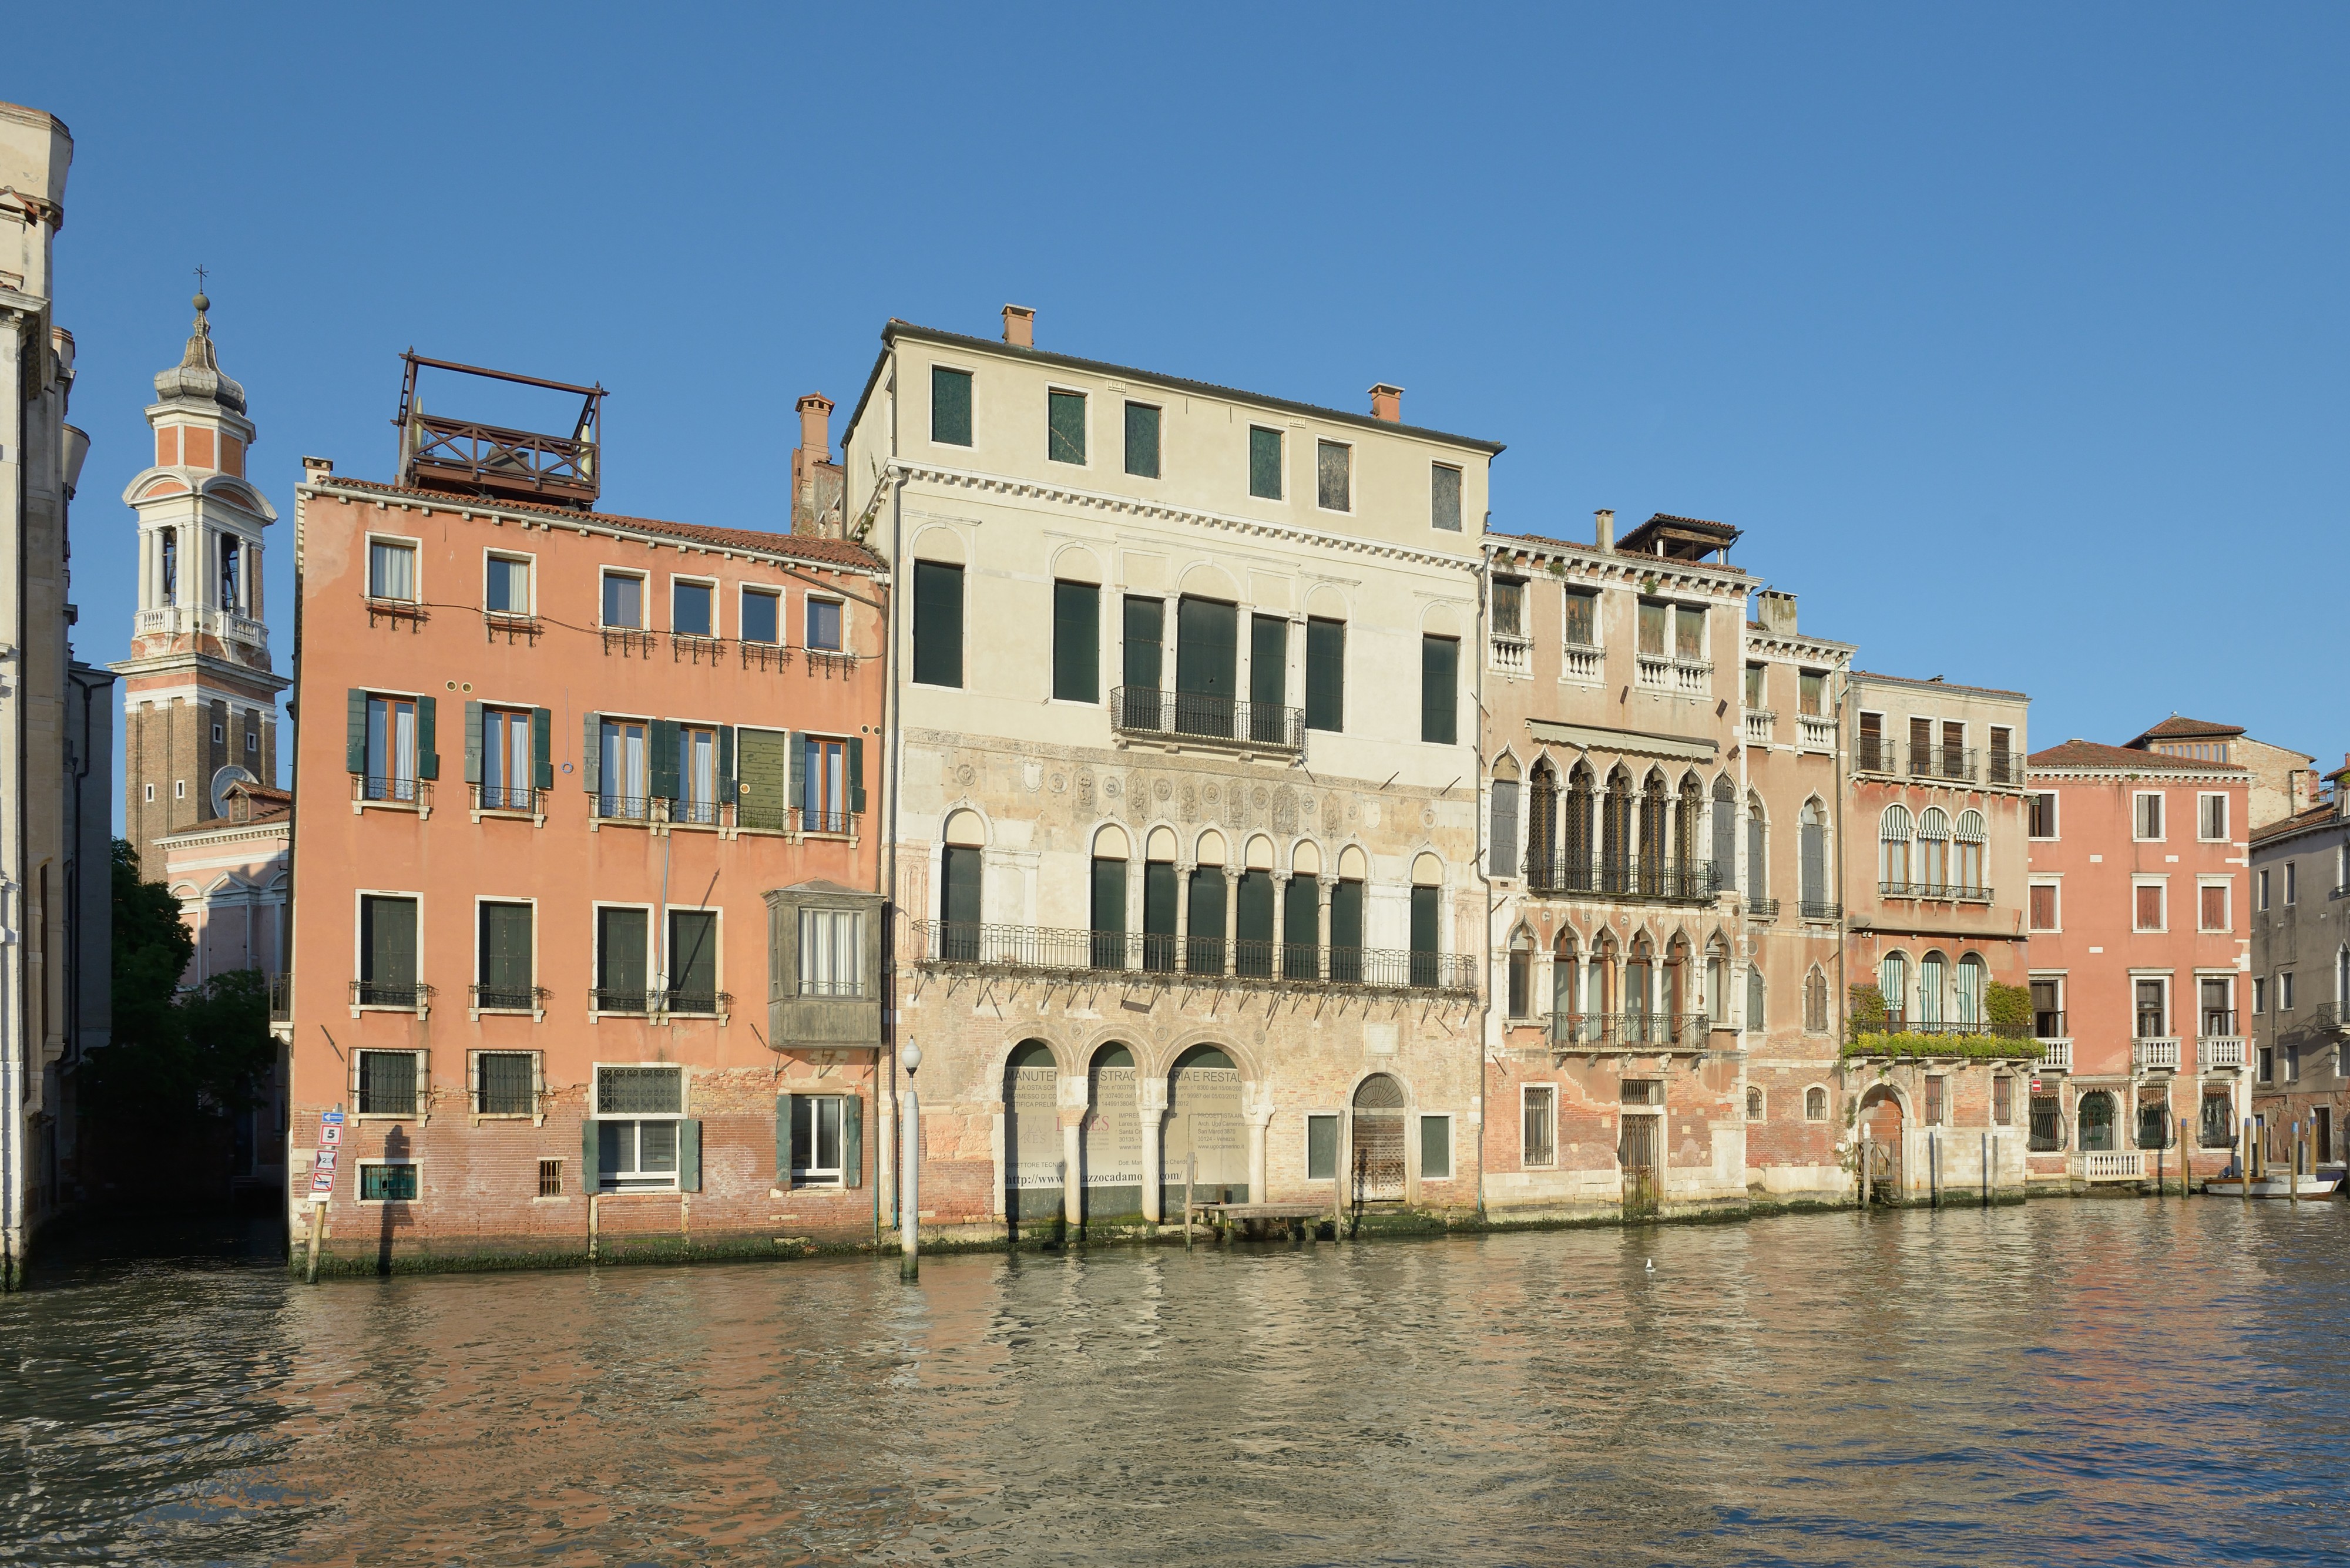 Palazzo Ca' da Mosto Palazzo Dolfin Canal Grande Venezia